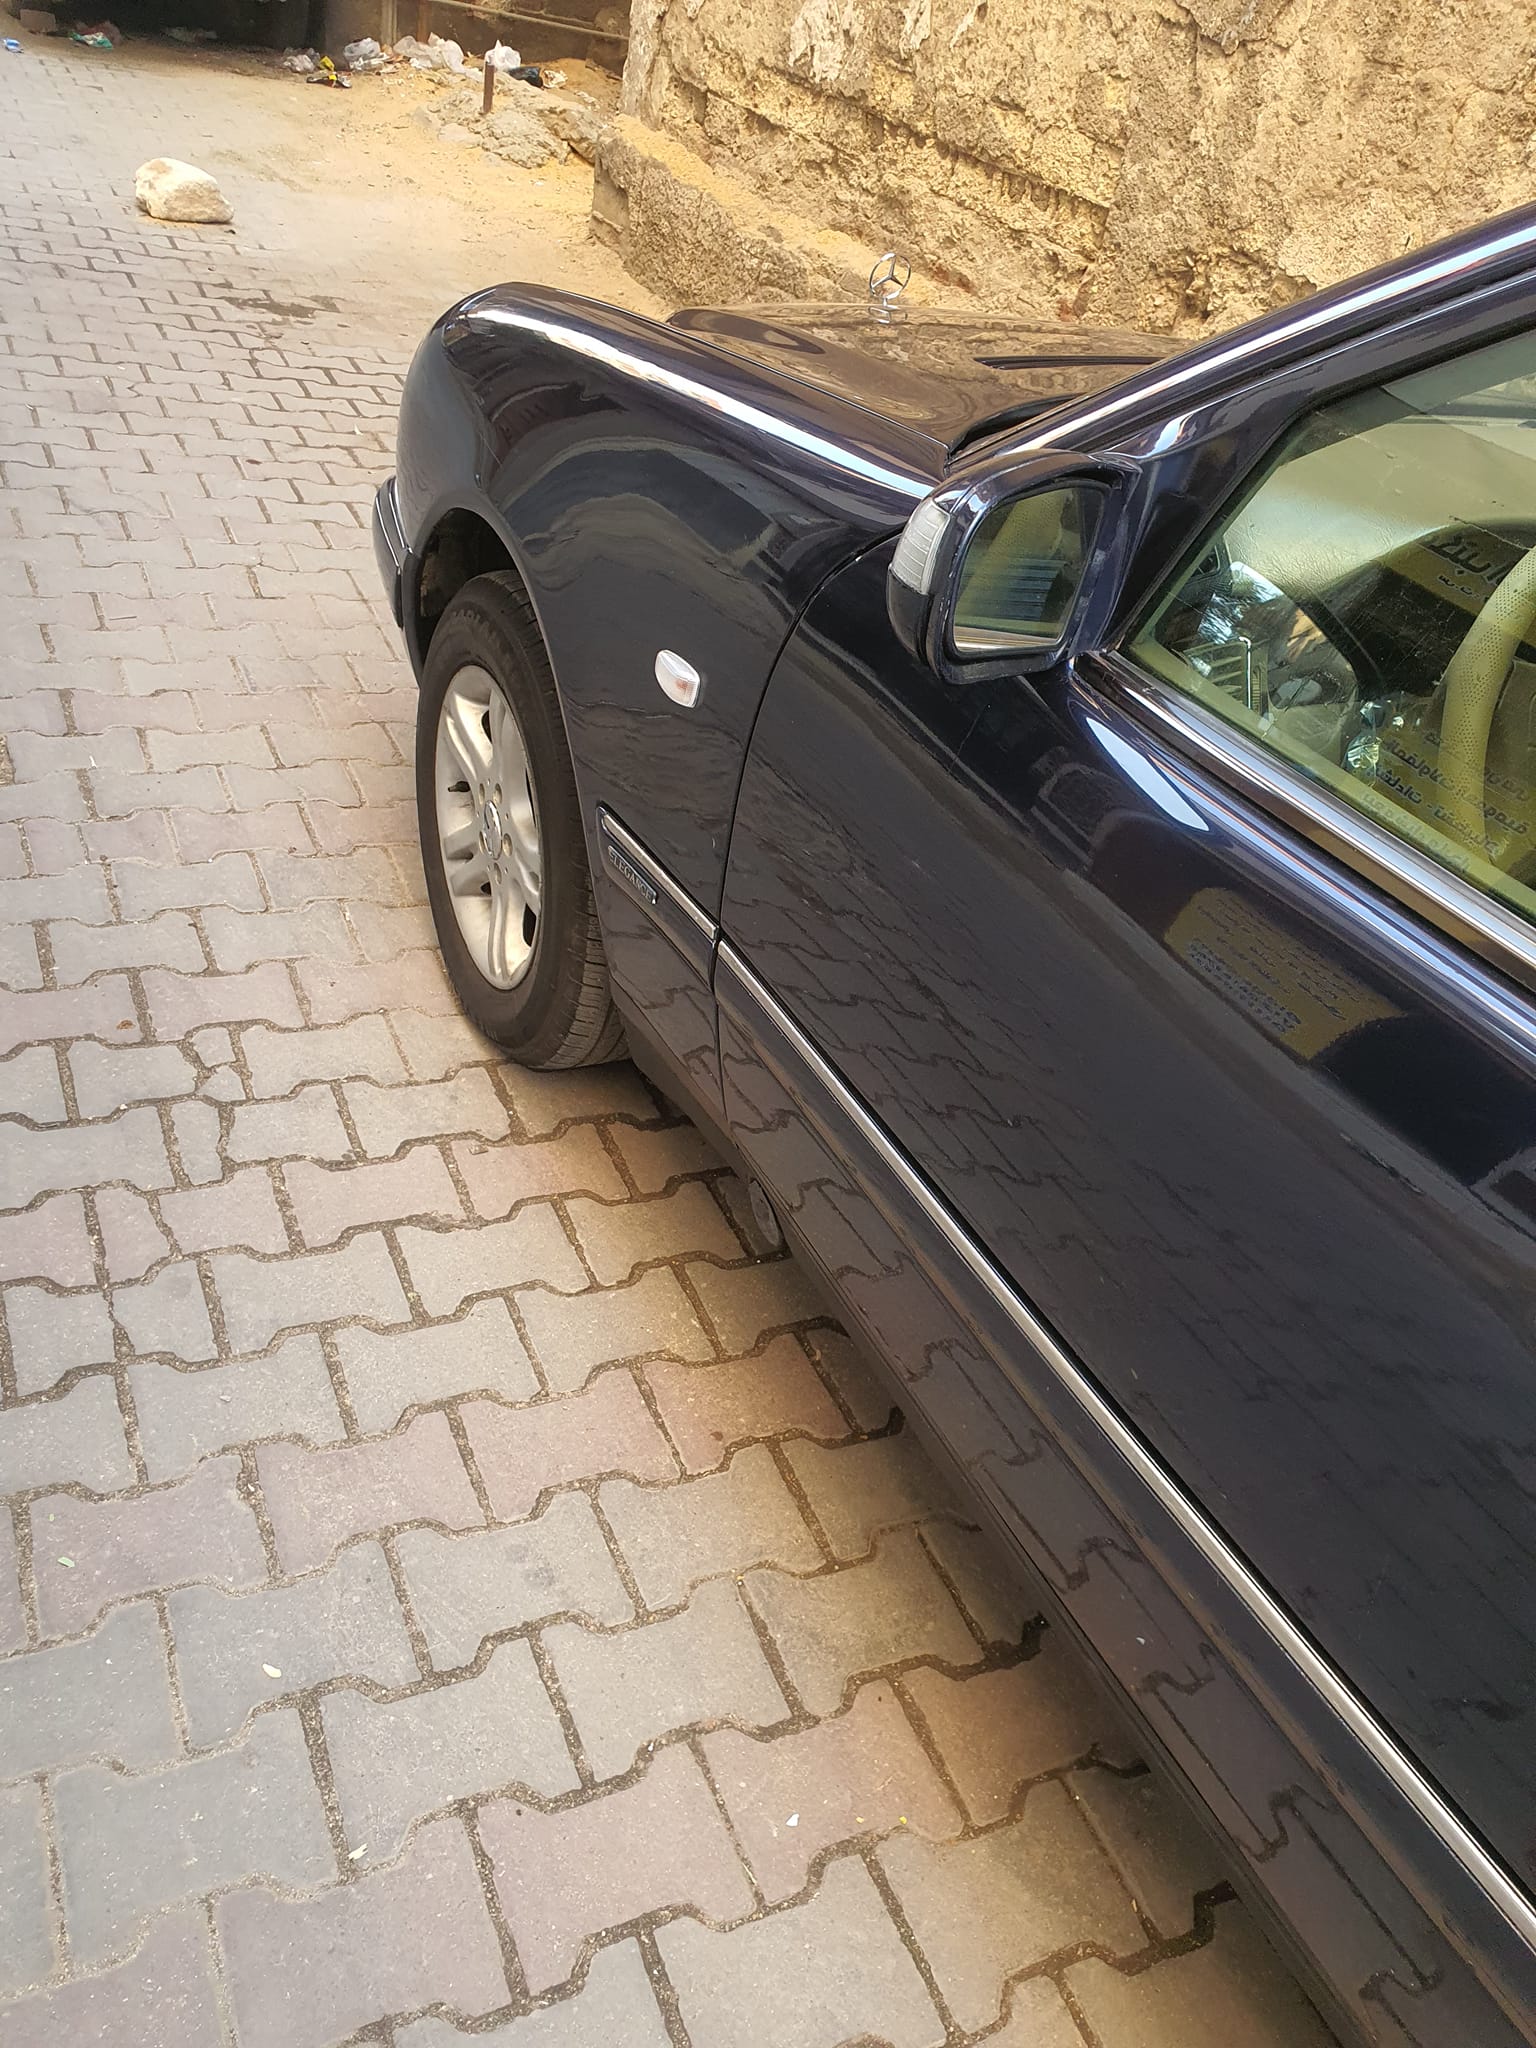 سيارات مرسيدس E240 مستعملة للبيع في مصر